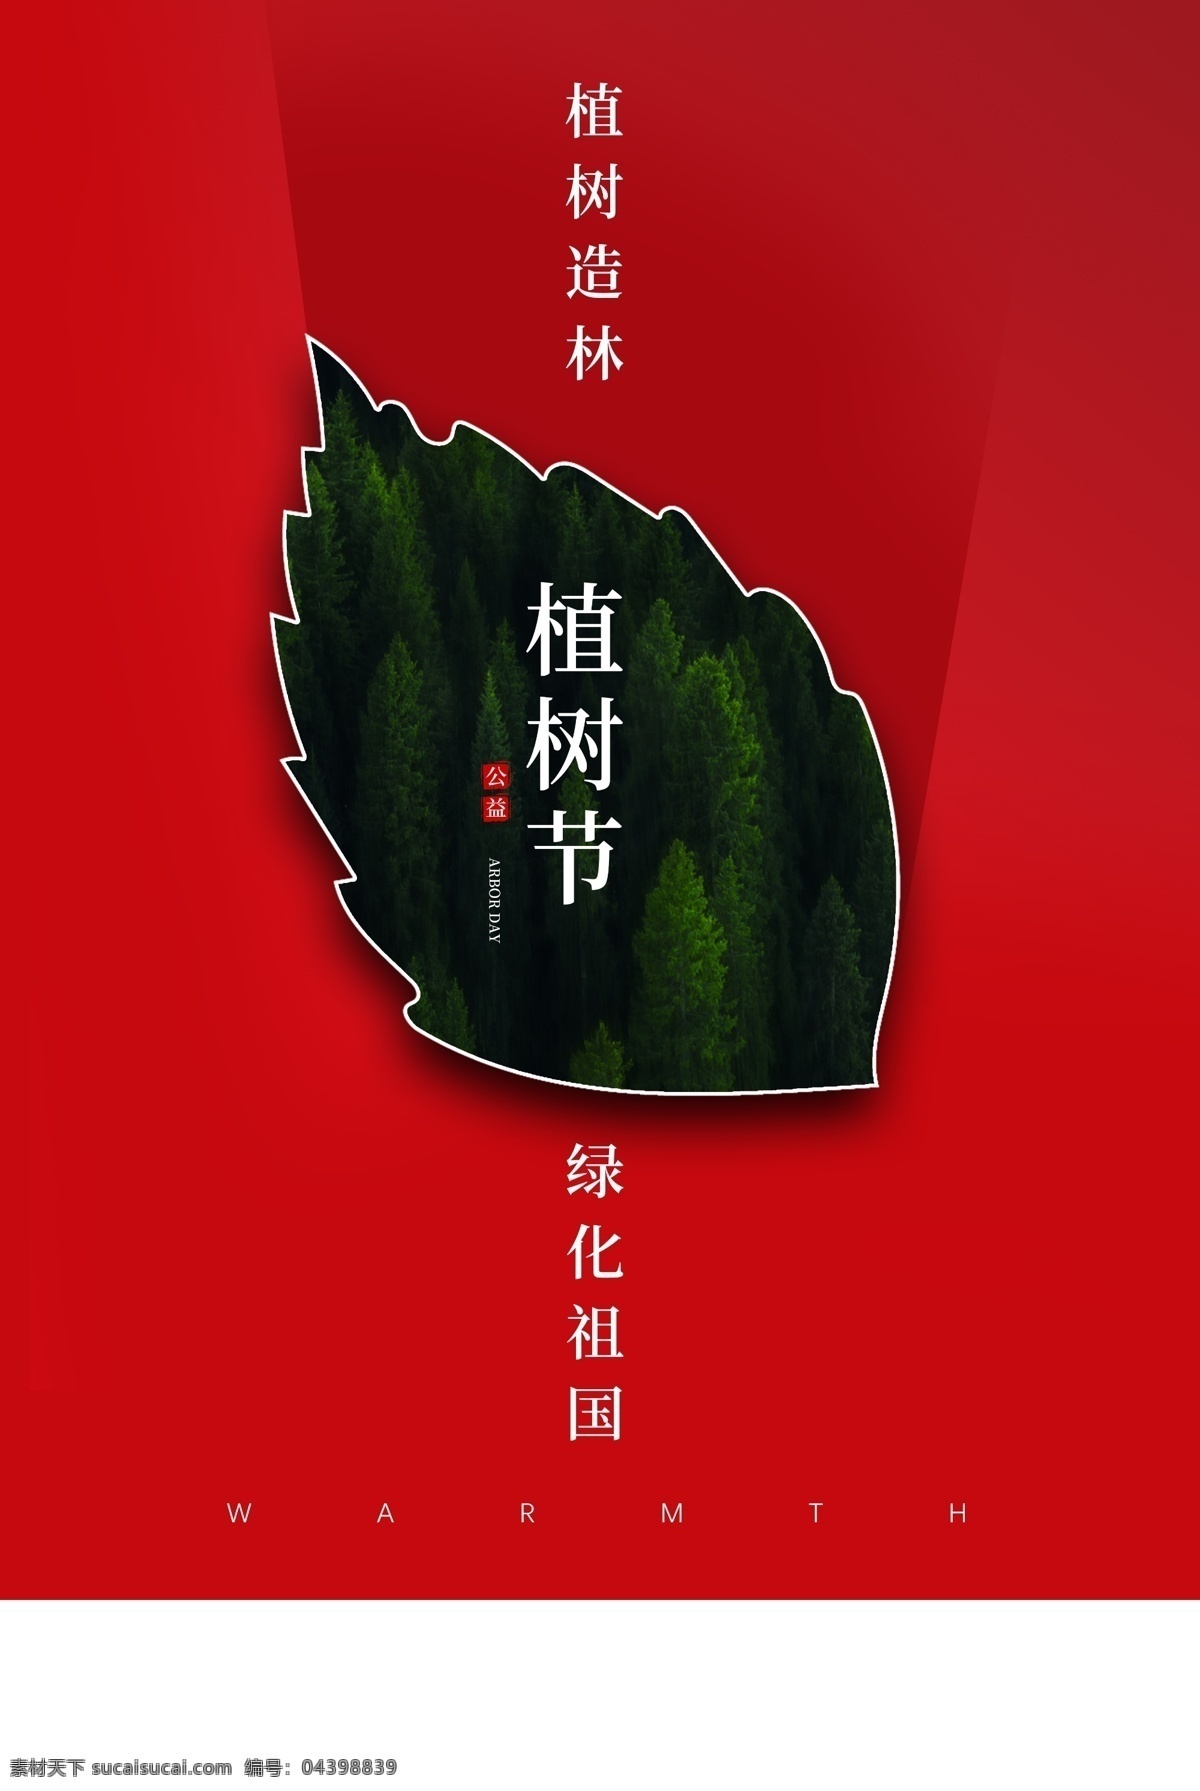 植树节 节日 促销 宣传海报 素材图片 宣传 海报 传统节日